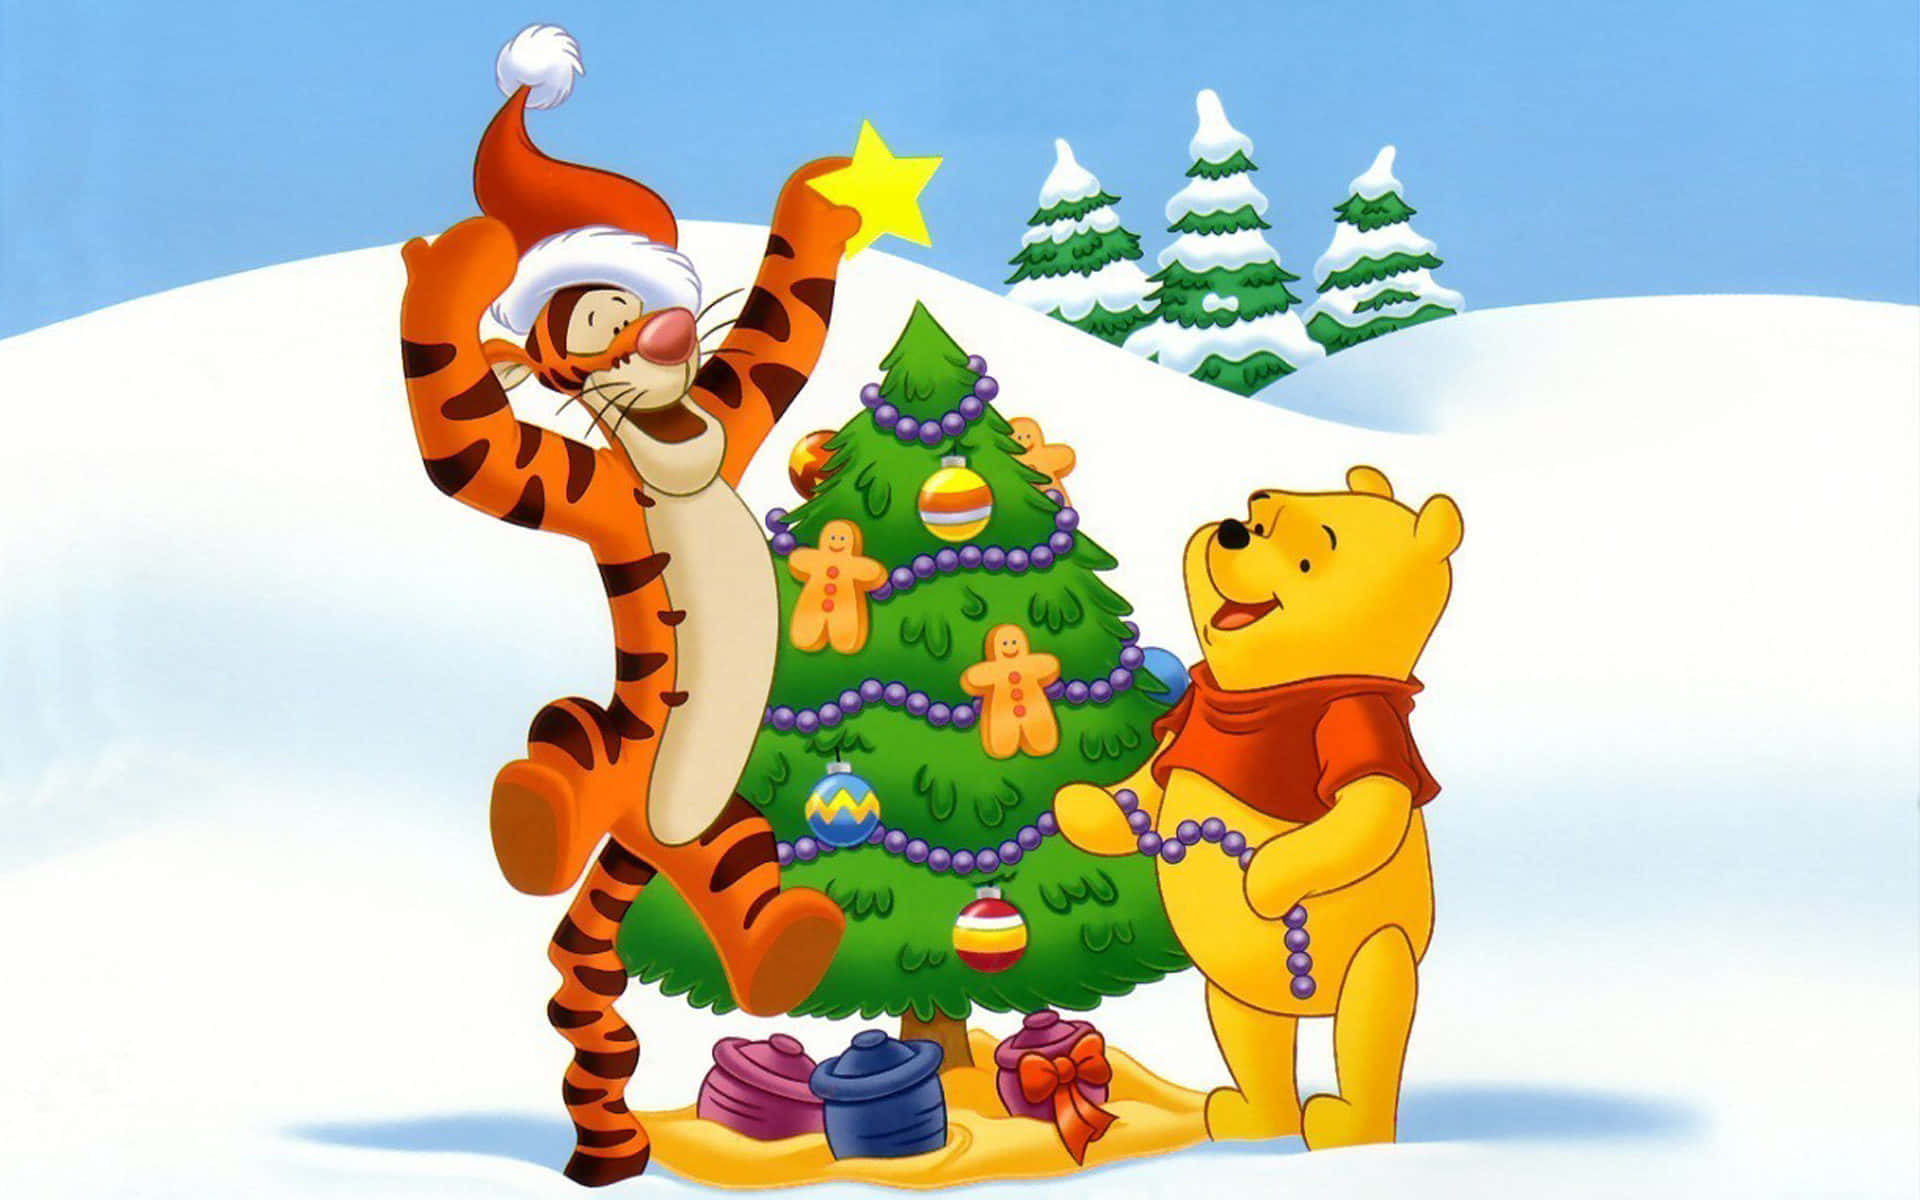 Imagende Navidad De Tigger Y Pooh Con Un Árbol De Vacaciones.